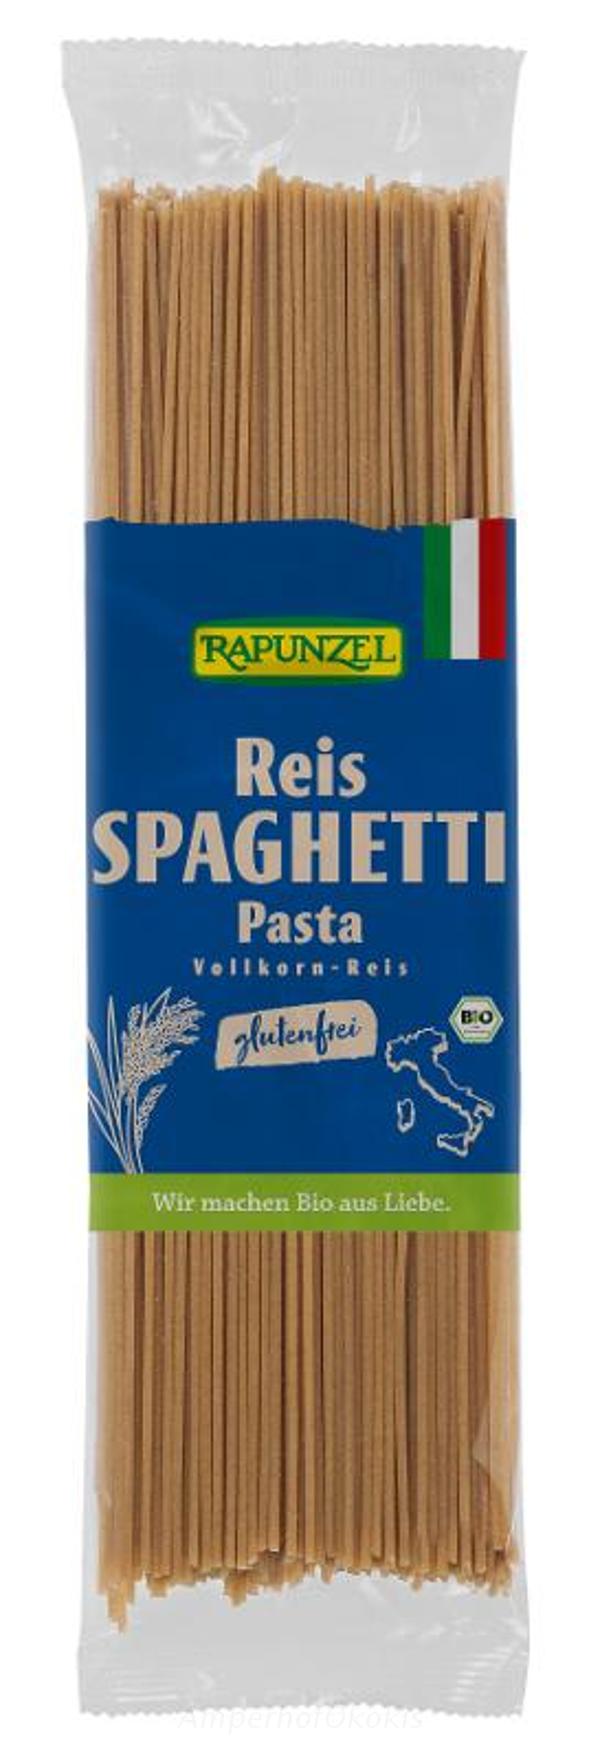 Produktfoto zu Reis-Spaghetti Vollkorn glutenfrei 250 g